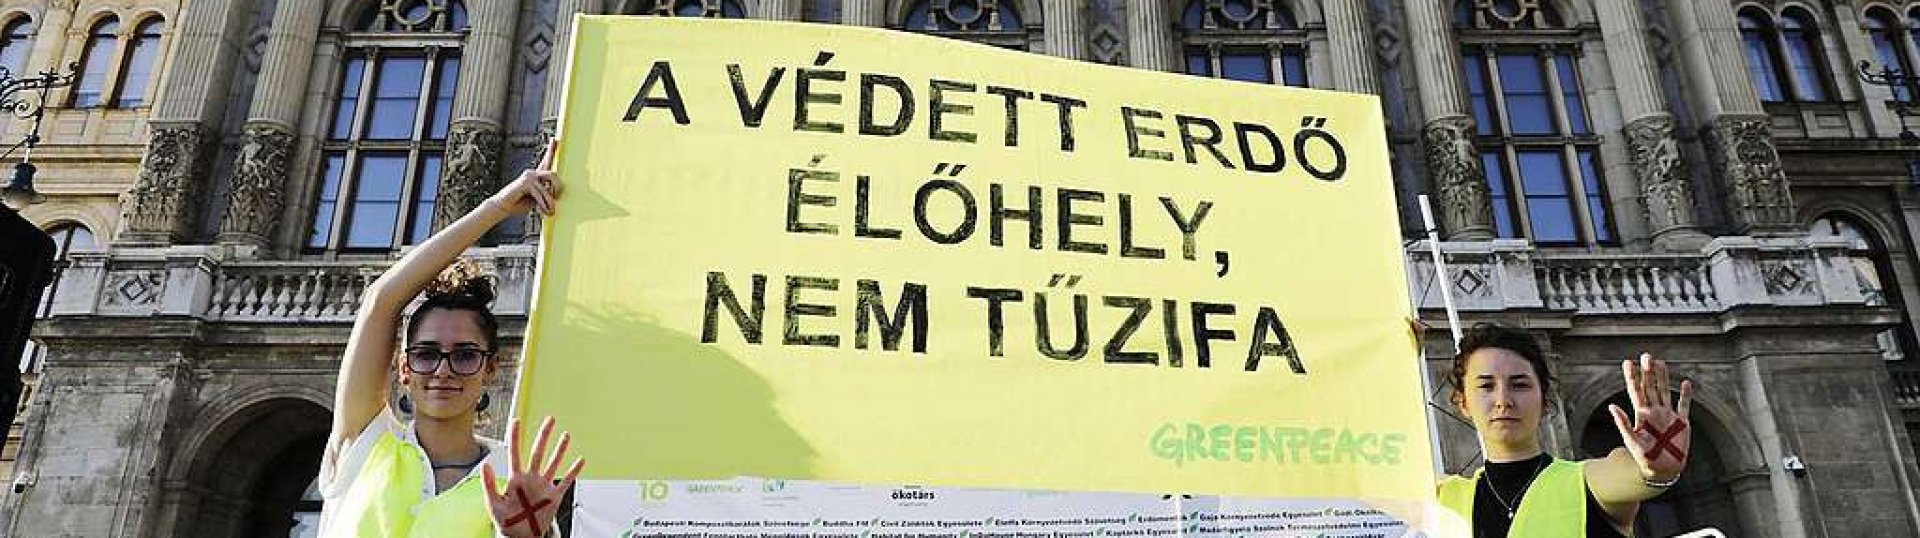 A magyarok többsége elutasítja, hogy a kormány fakivágással kezelje az energiaválságot